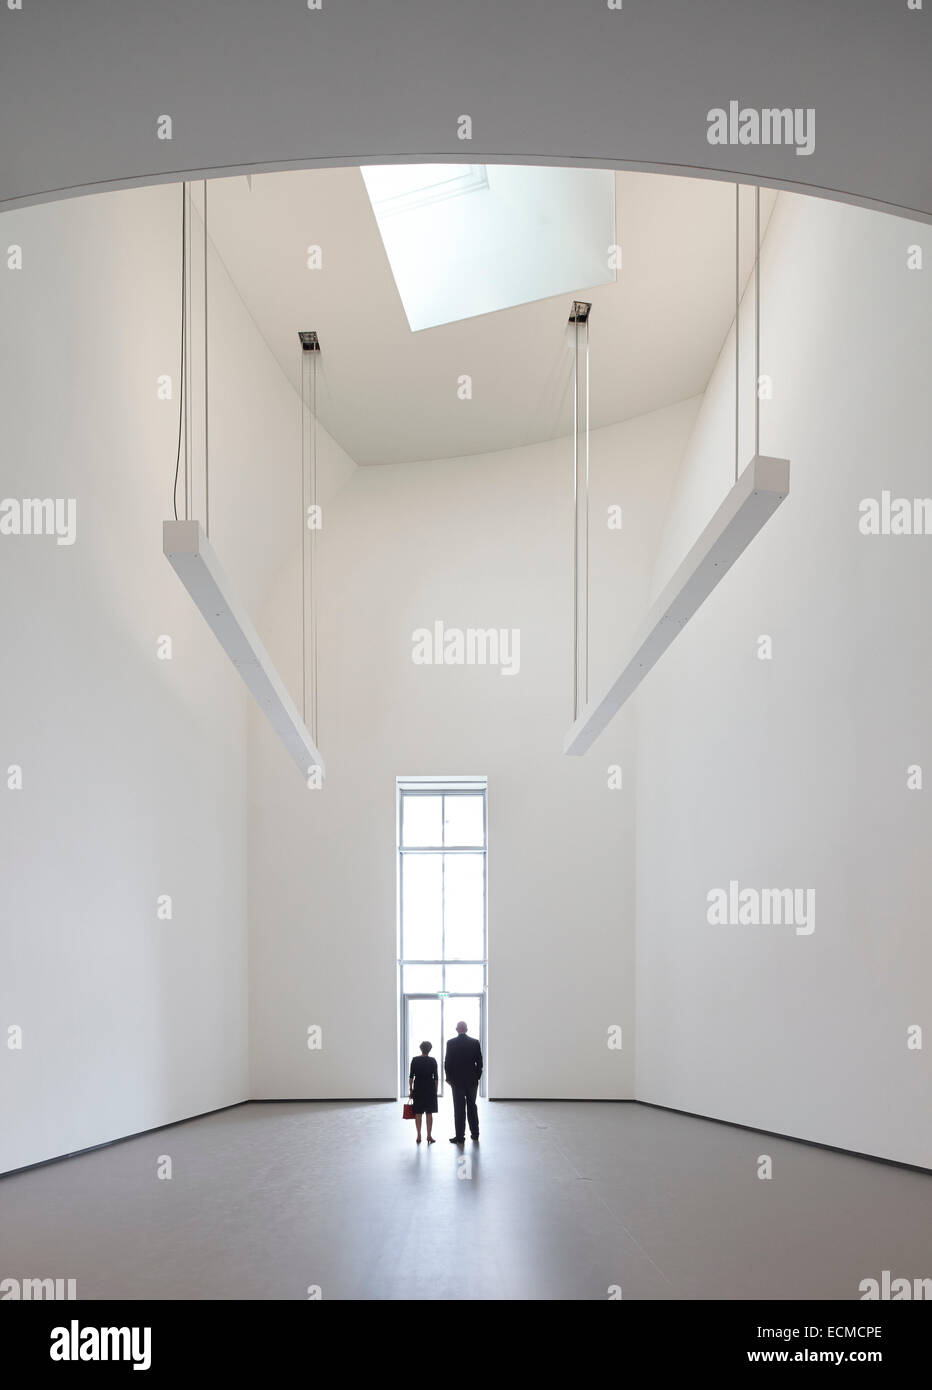 Fondation Louis Vuitton, Paris, France. Architect: Gehry Partners Stock Photo: 76666422 - Alamy